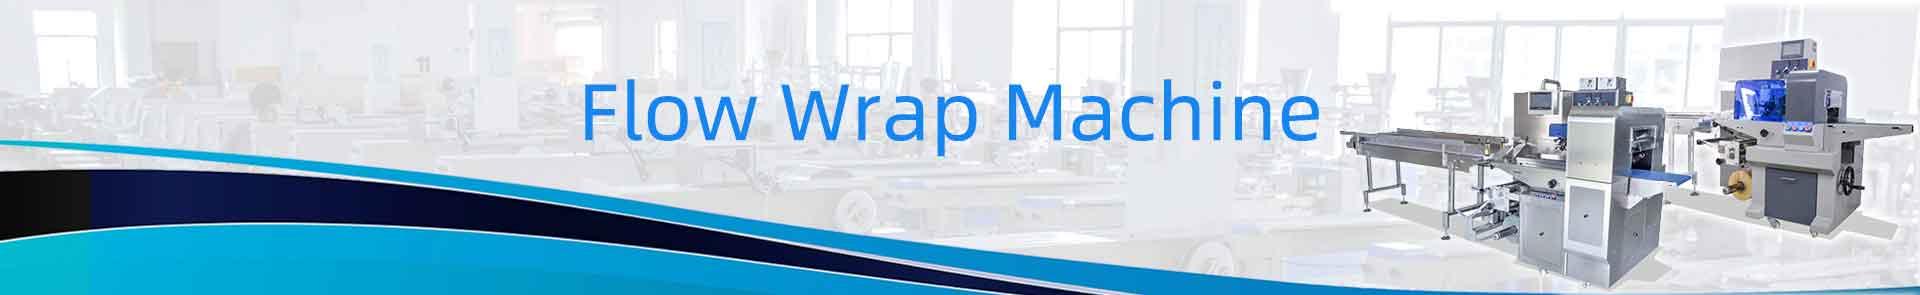 Flow wrap machine